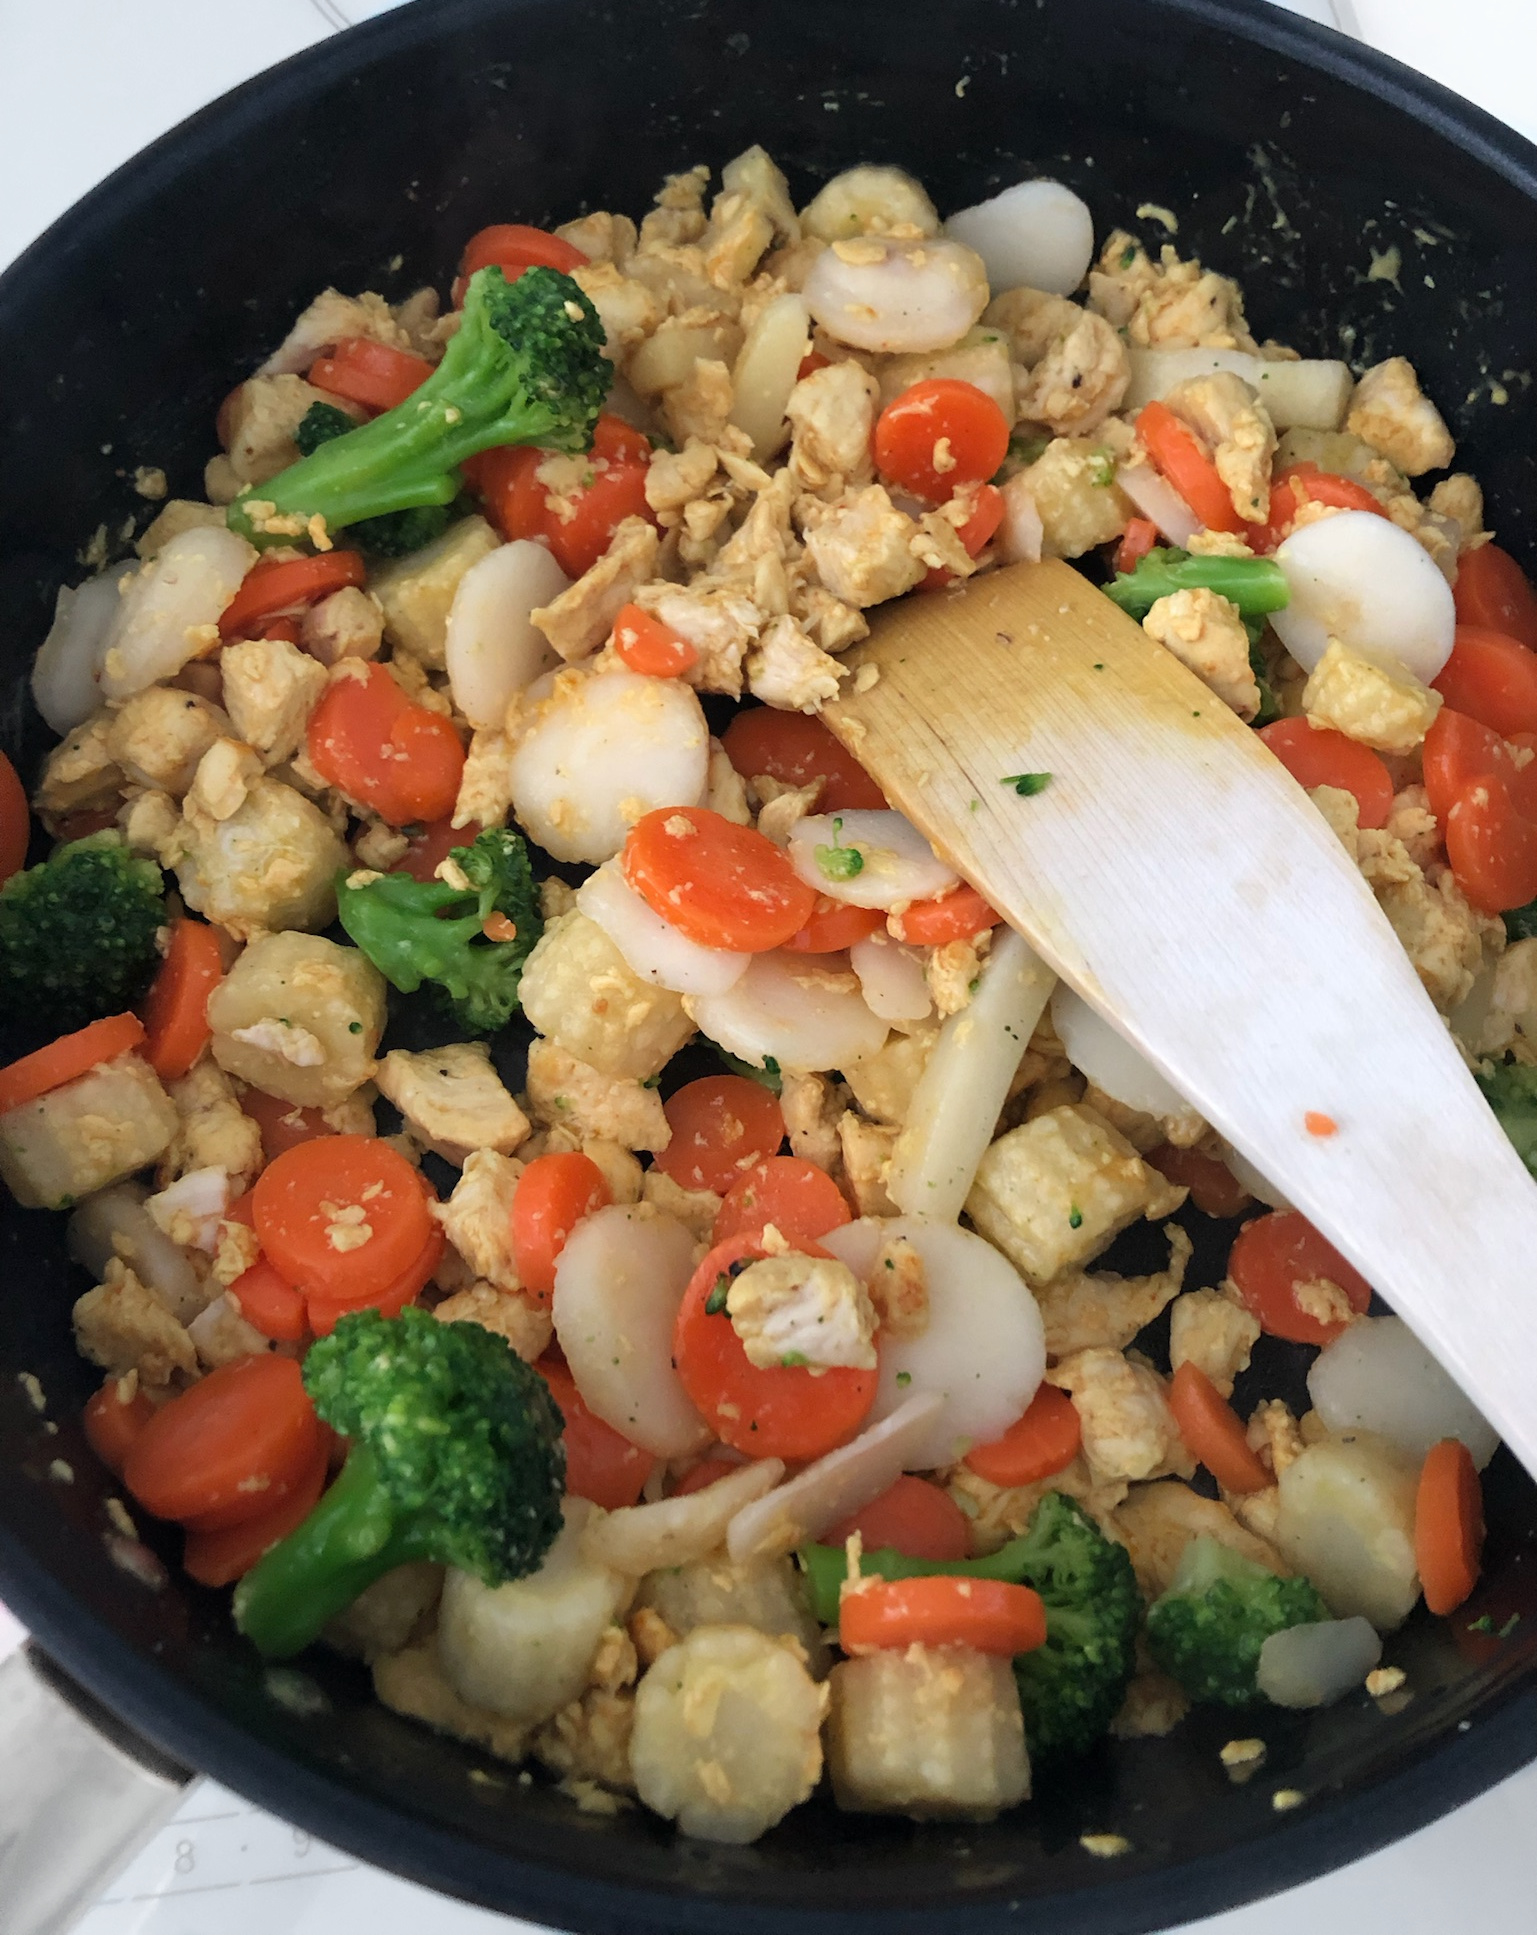 Nopea kana-riisiwokki resepti - Nopea ja helppo arkiruoka koko perheelle